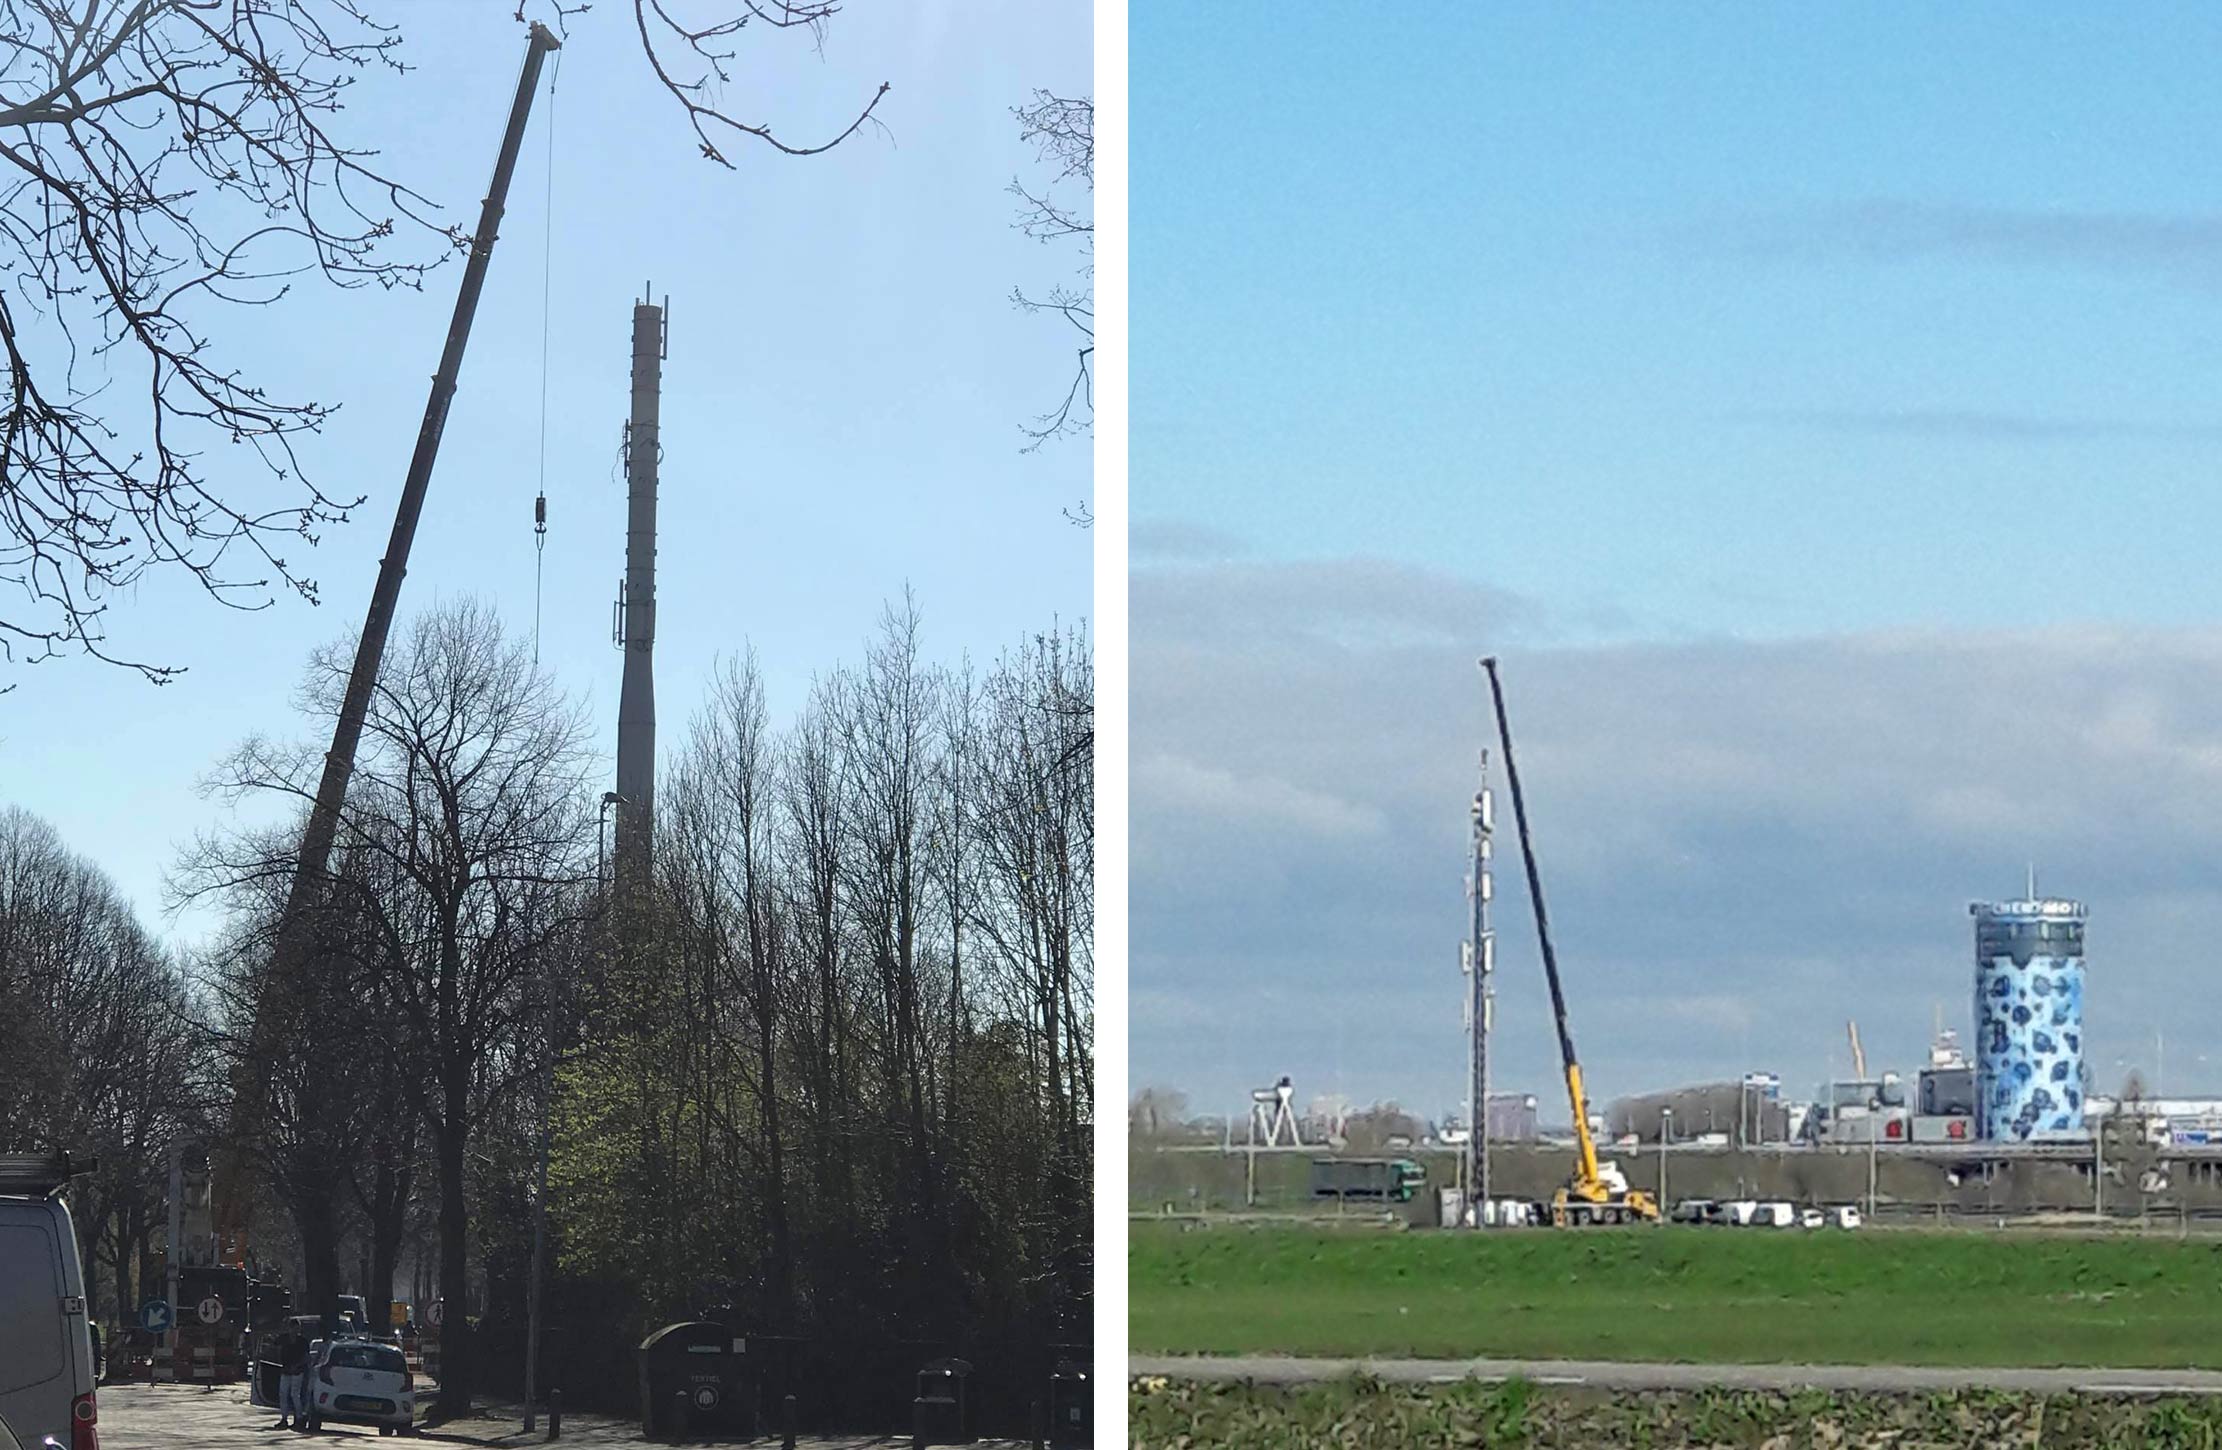 Installatie van nieuwe antennes en masten gedurende lockdown, maart/april 2020